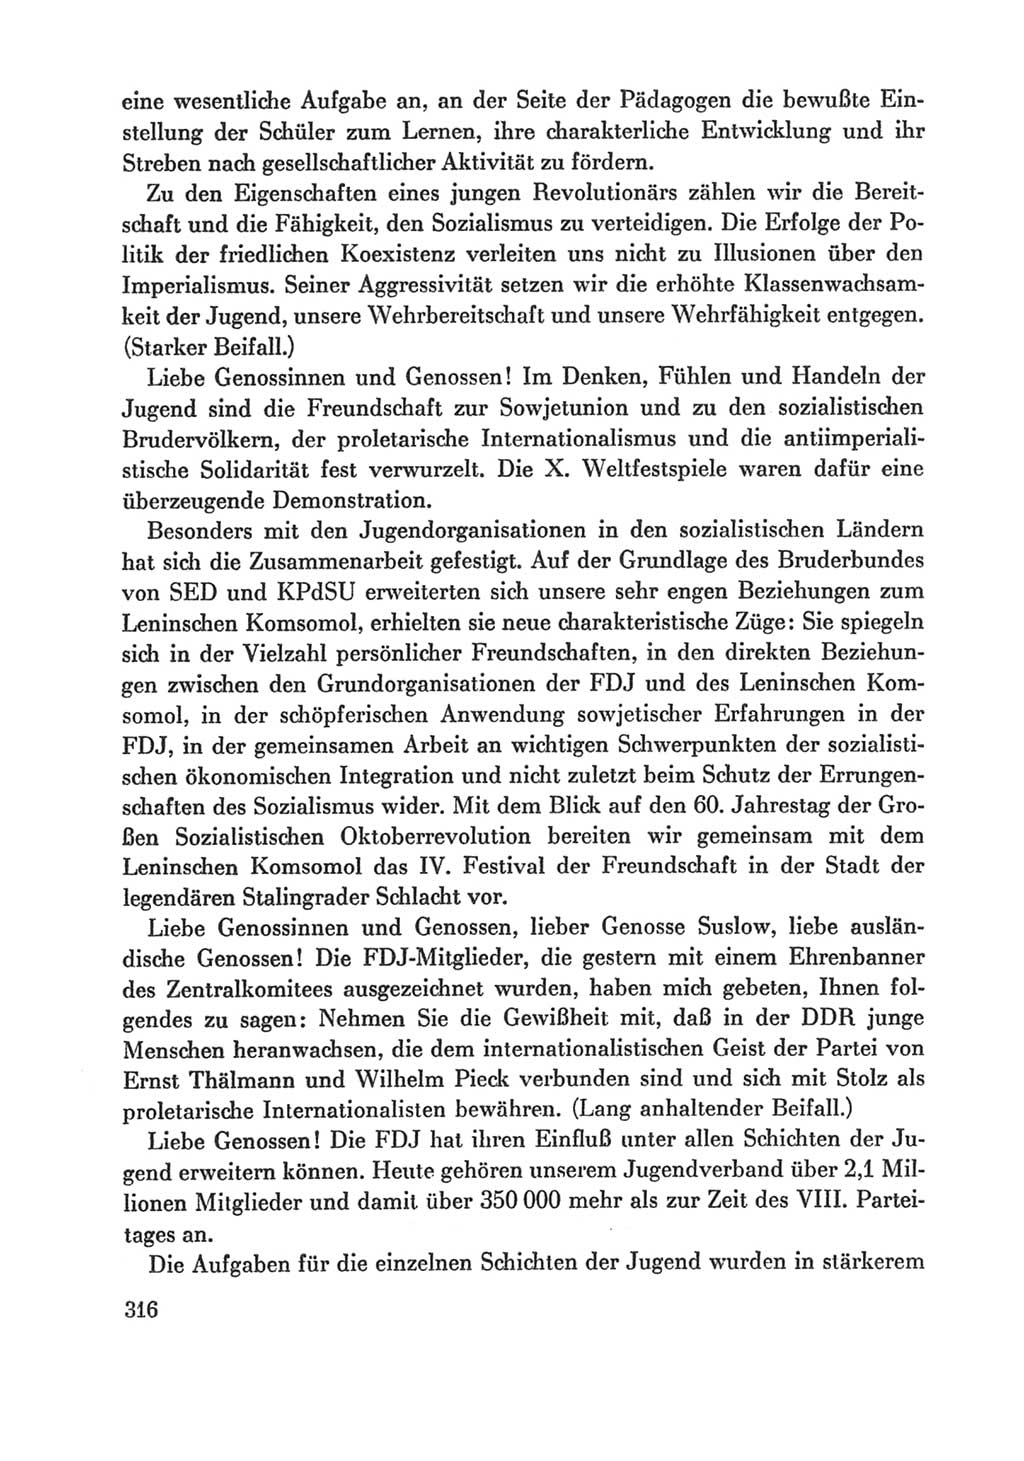 Protokoll der Verhandlungen des Ⅸ. Parteitages der Sozialistischen Einheitspartei Deutschlands (SED) [Deutsche Demokratische Republik (DDR)] 1976, Band 1, Seite 316 (Prot. Verh. Ⅸ. PT SED DDR 1976, Bd. 1, S. 316)